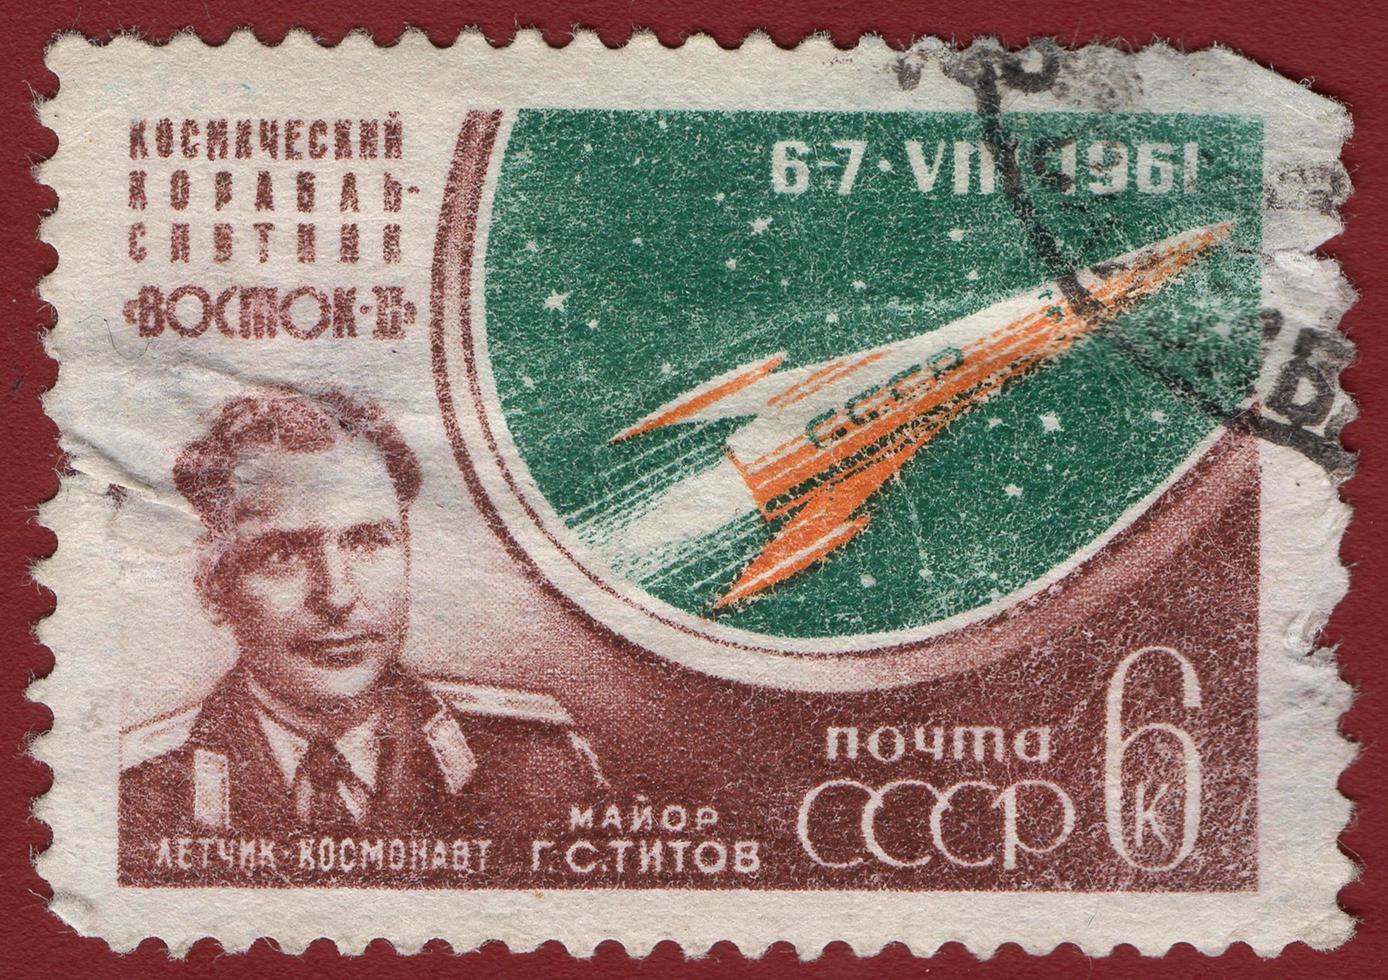 união soviética - selo impresso por volta de 1961 na urss mostra segundo cosmonauta soviético titov alemão e nave espacial vostok 2, por volta de 1961 foto